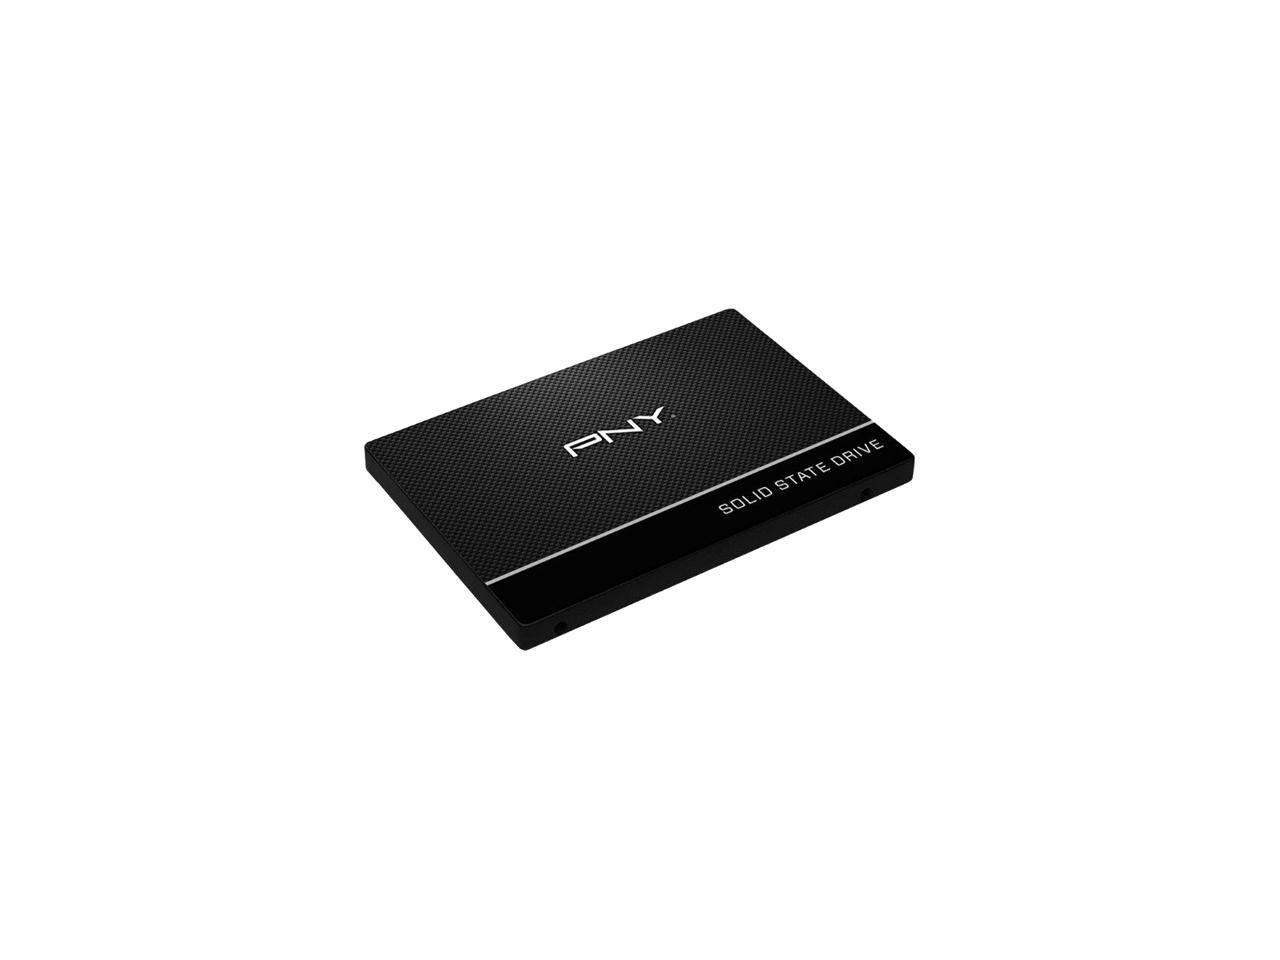 PNY CS900 480GB 2.5" SATA III INTERNAL Solid State Drive (SSD) - SSD7CS900-480-RB